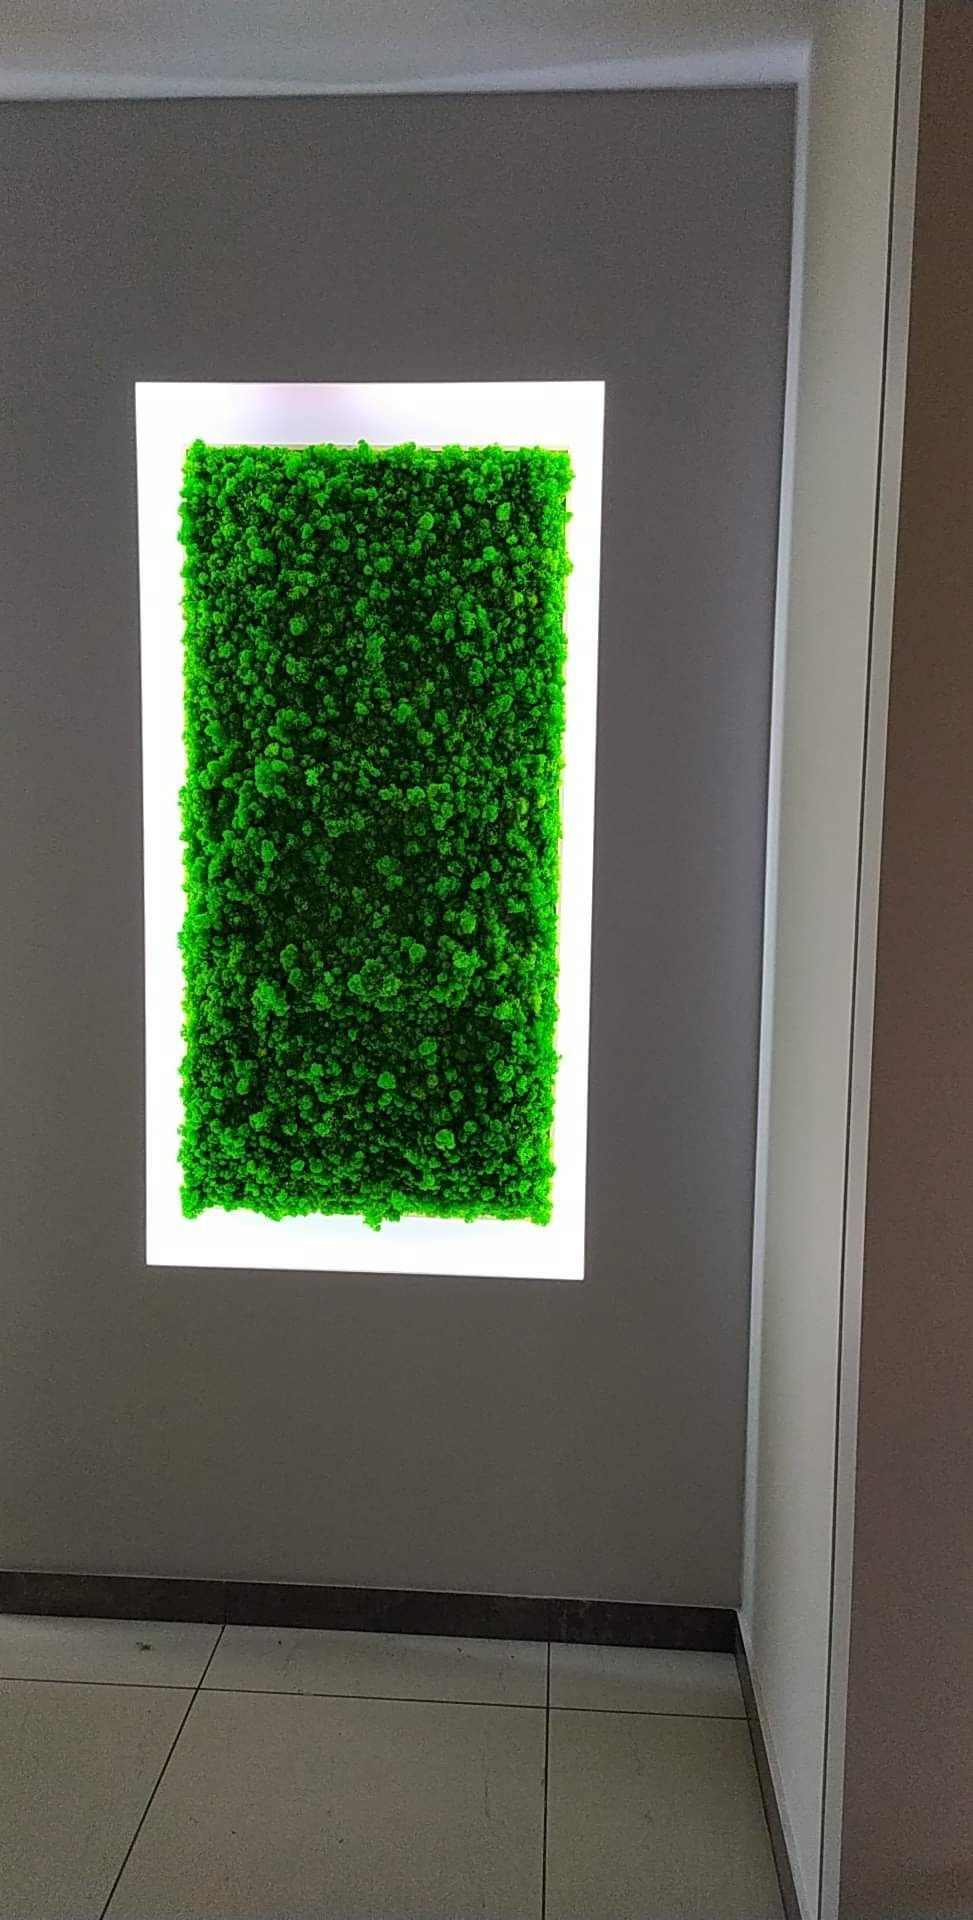 Obraz z mchu mech chrobotek reniferowy zielony obraz dekoracja